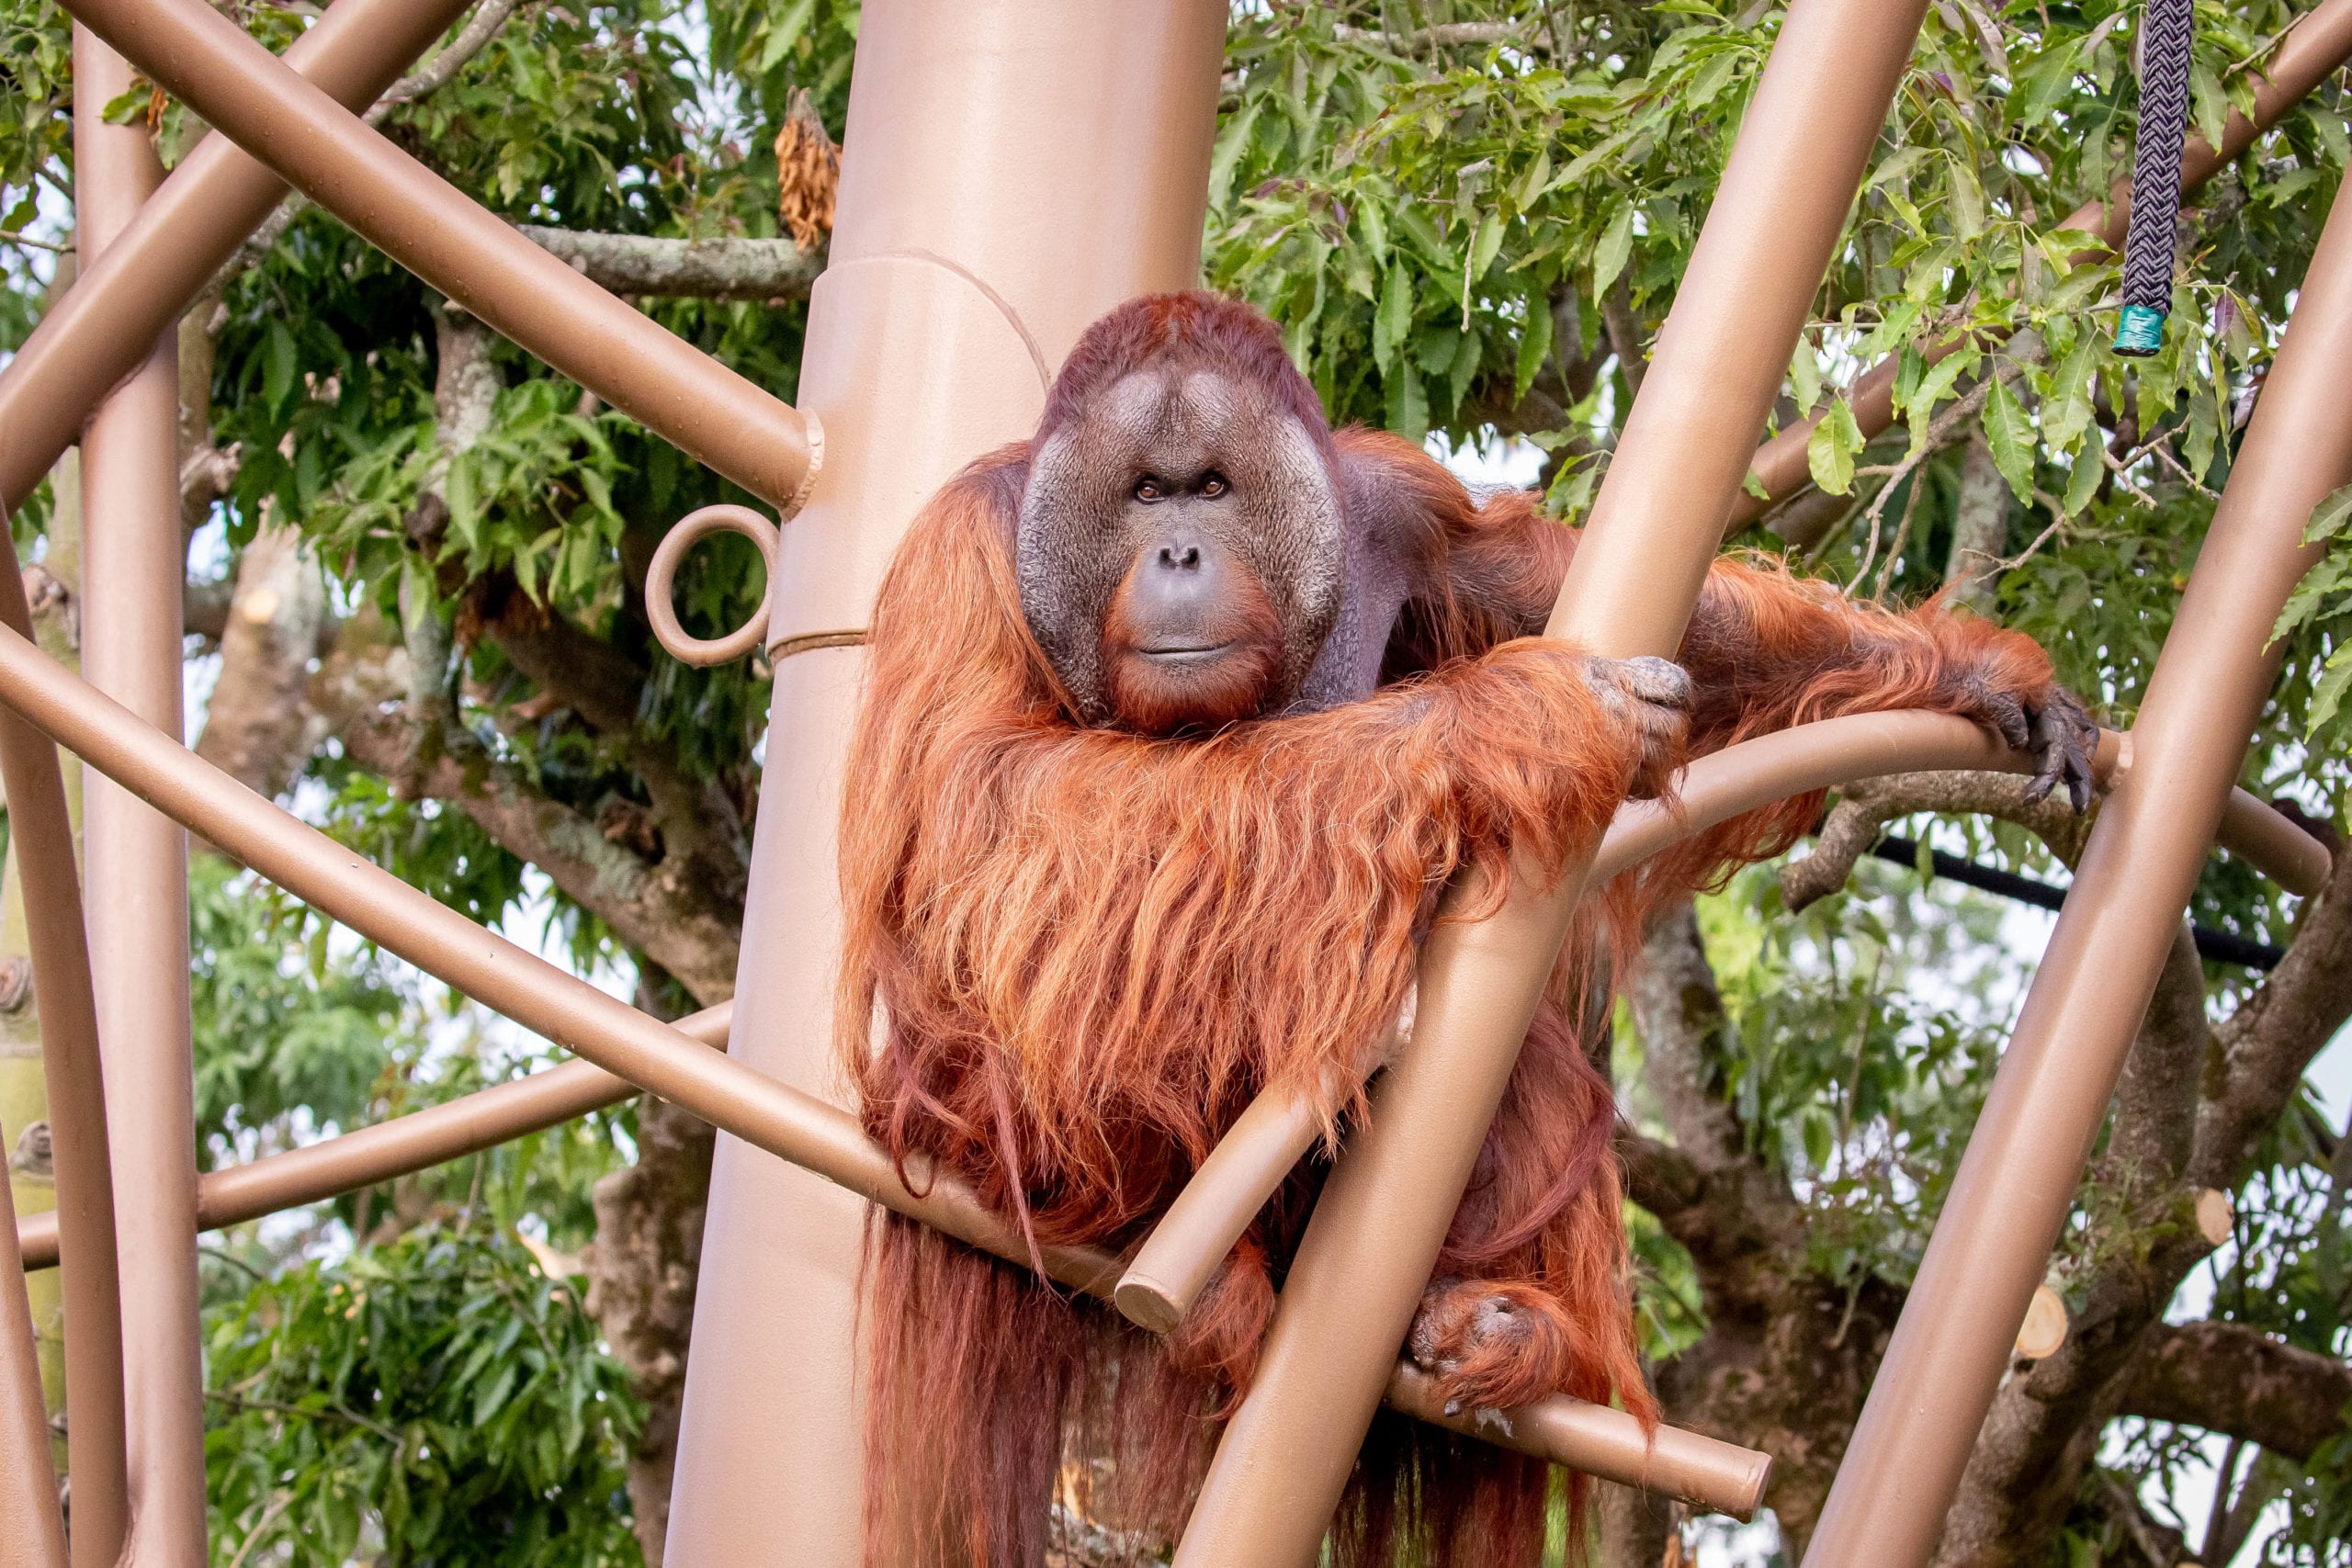 Auckland Zoo unveils exciting new primate habitat